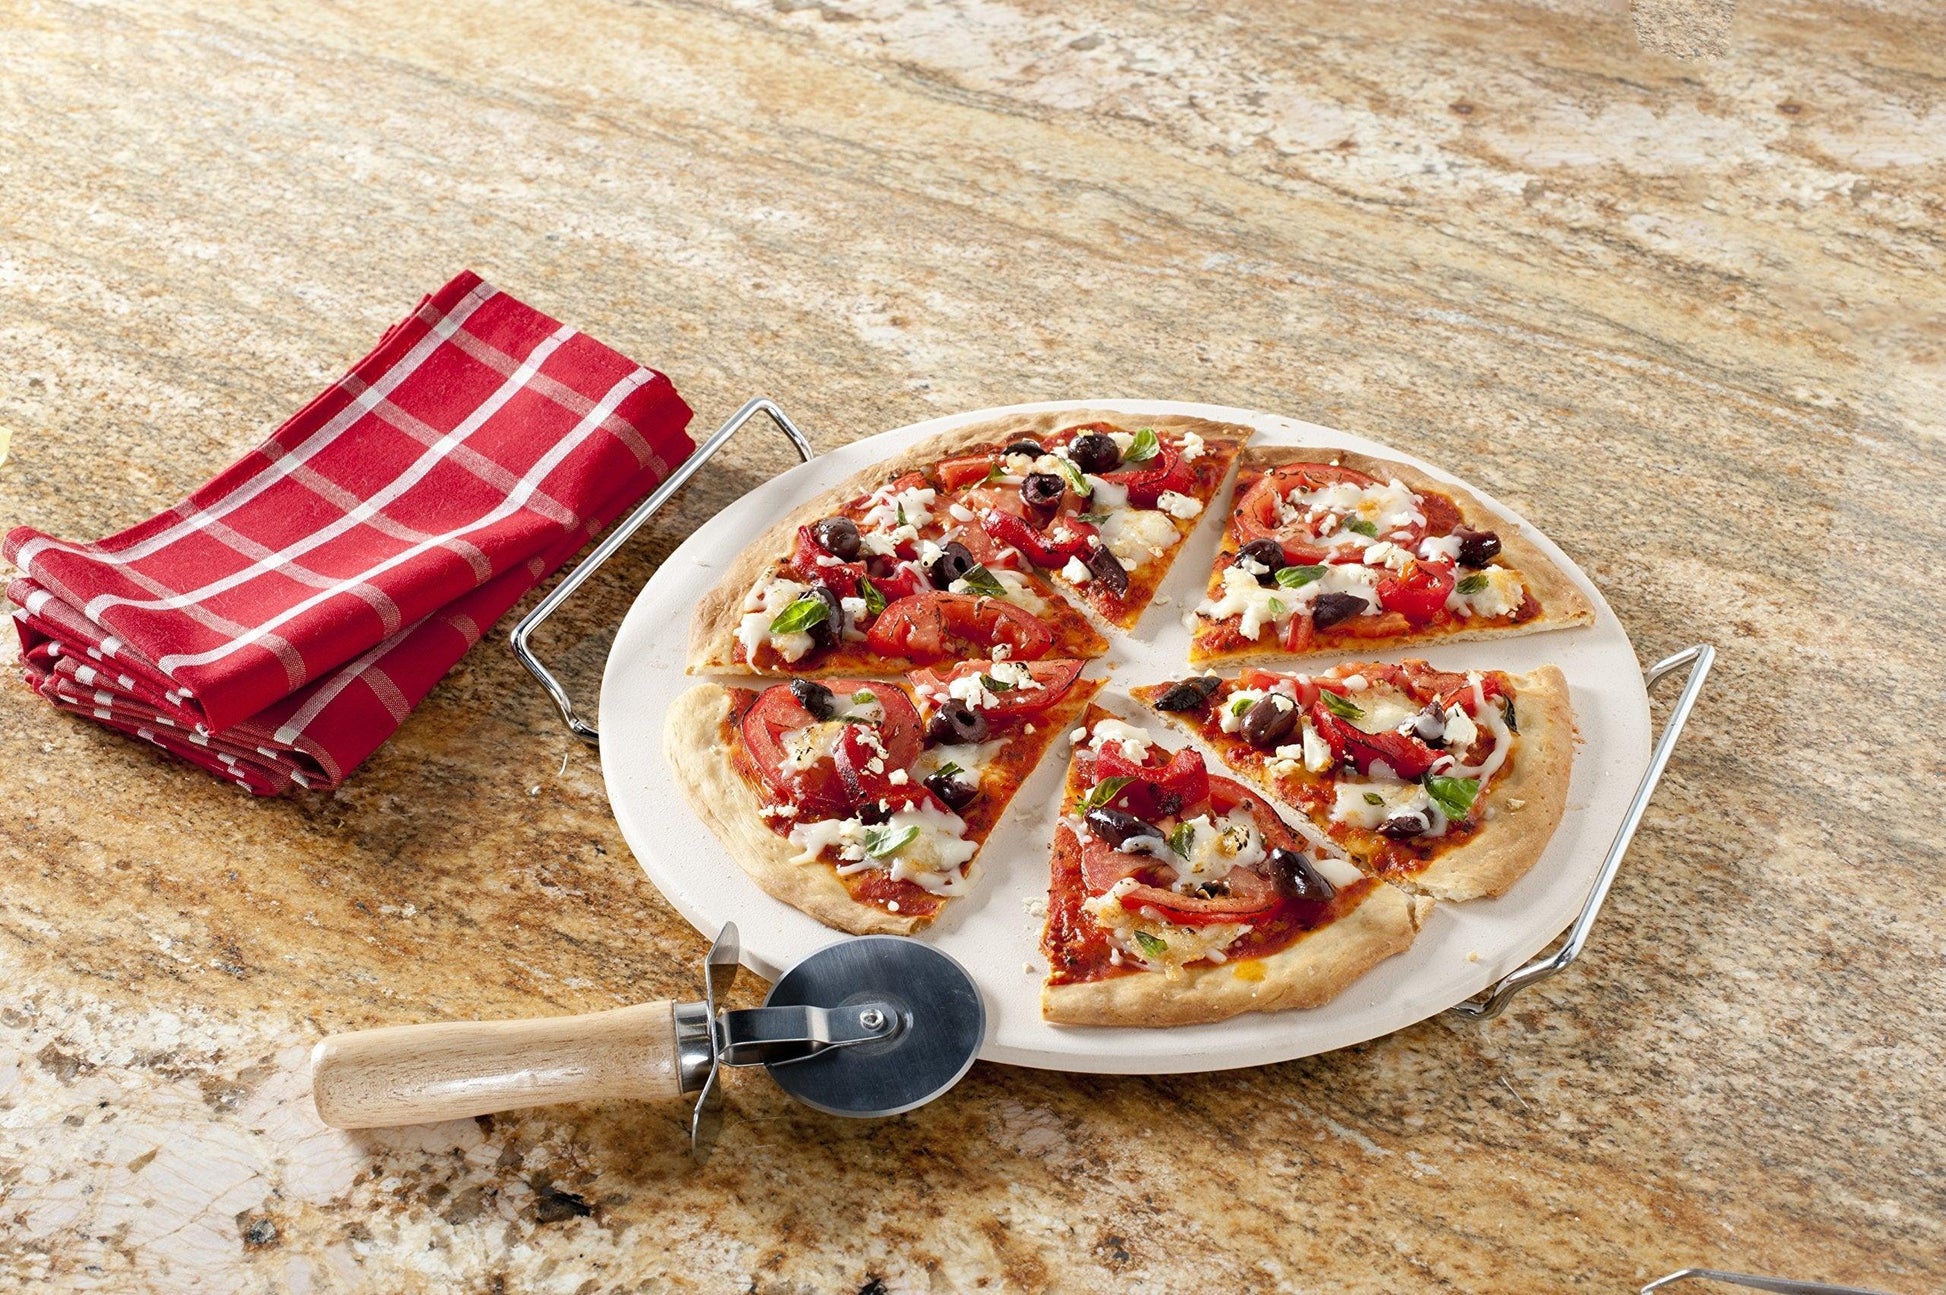 Nordic Ware, Tan Pizza Stone Set, 13 inch diameter - CookCave